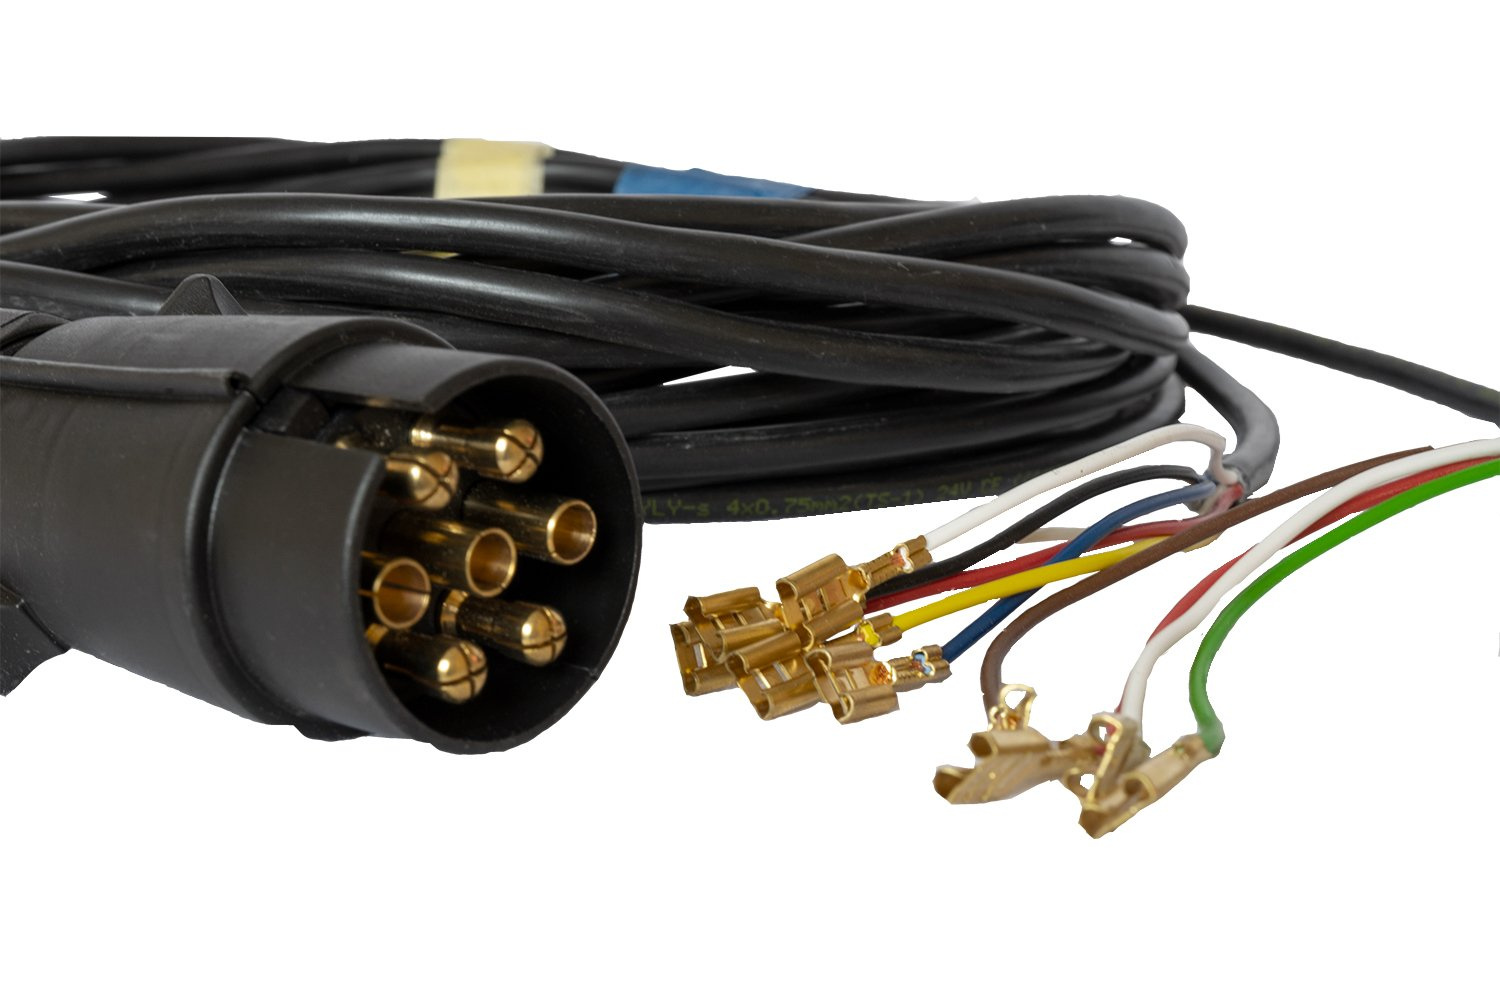  AOHEWEI Cable pour Remorque 7 Fils 5m Câble Electrique